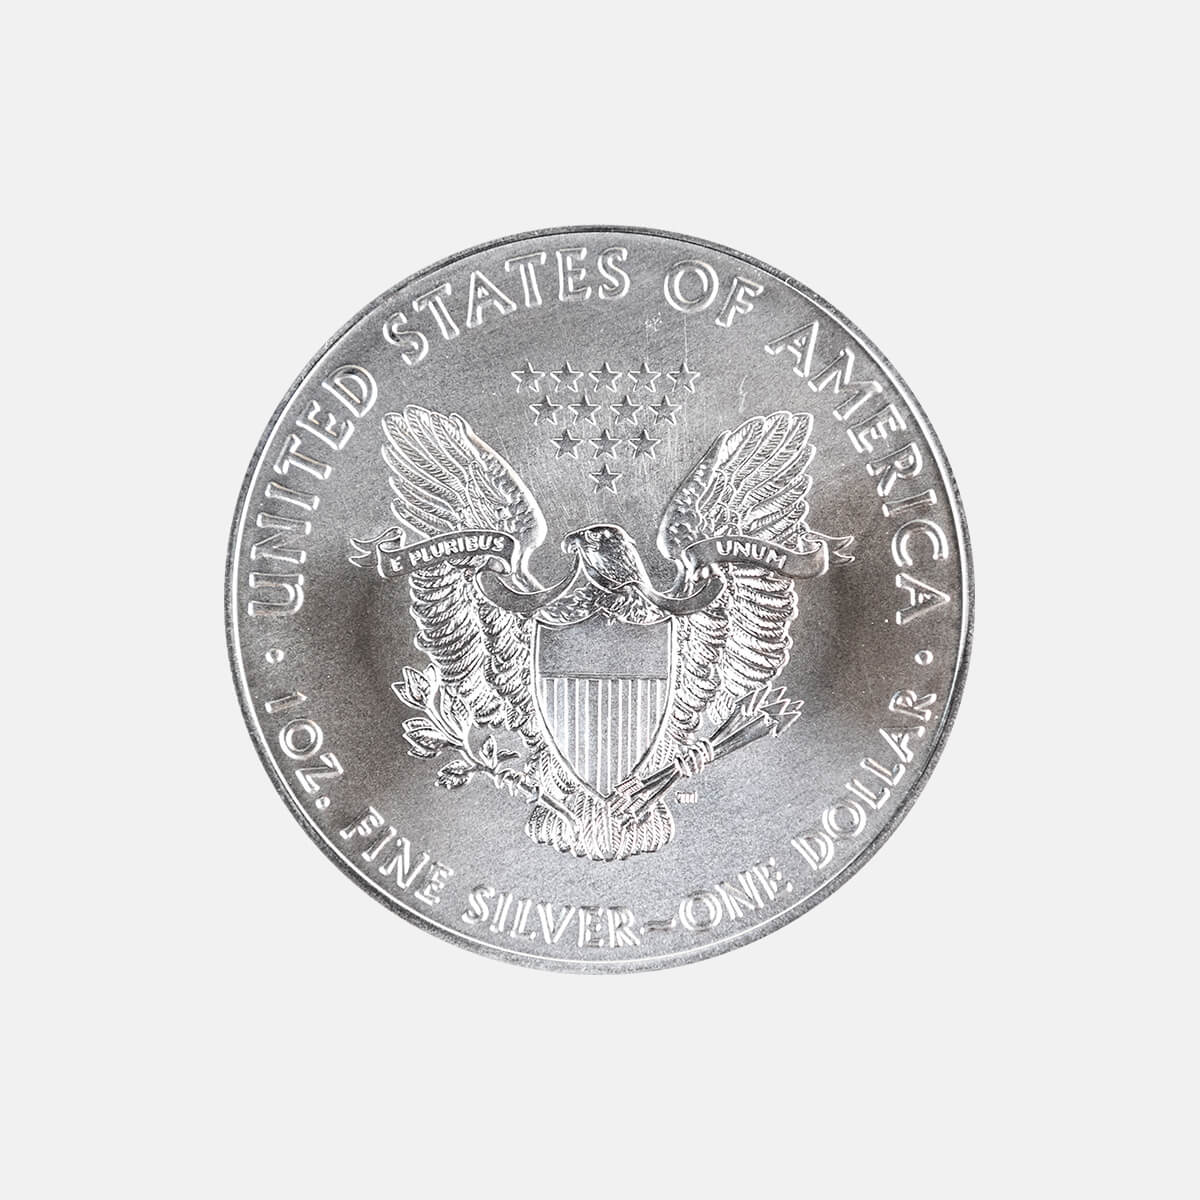 2020 Silver Eagle Coin